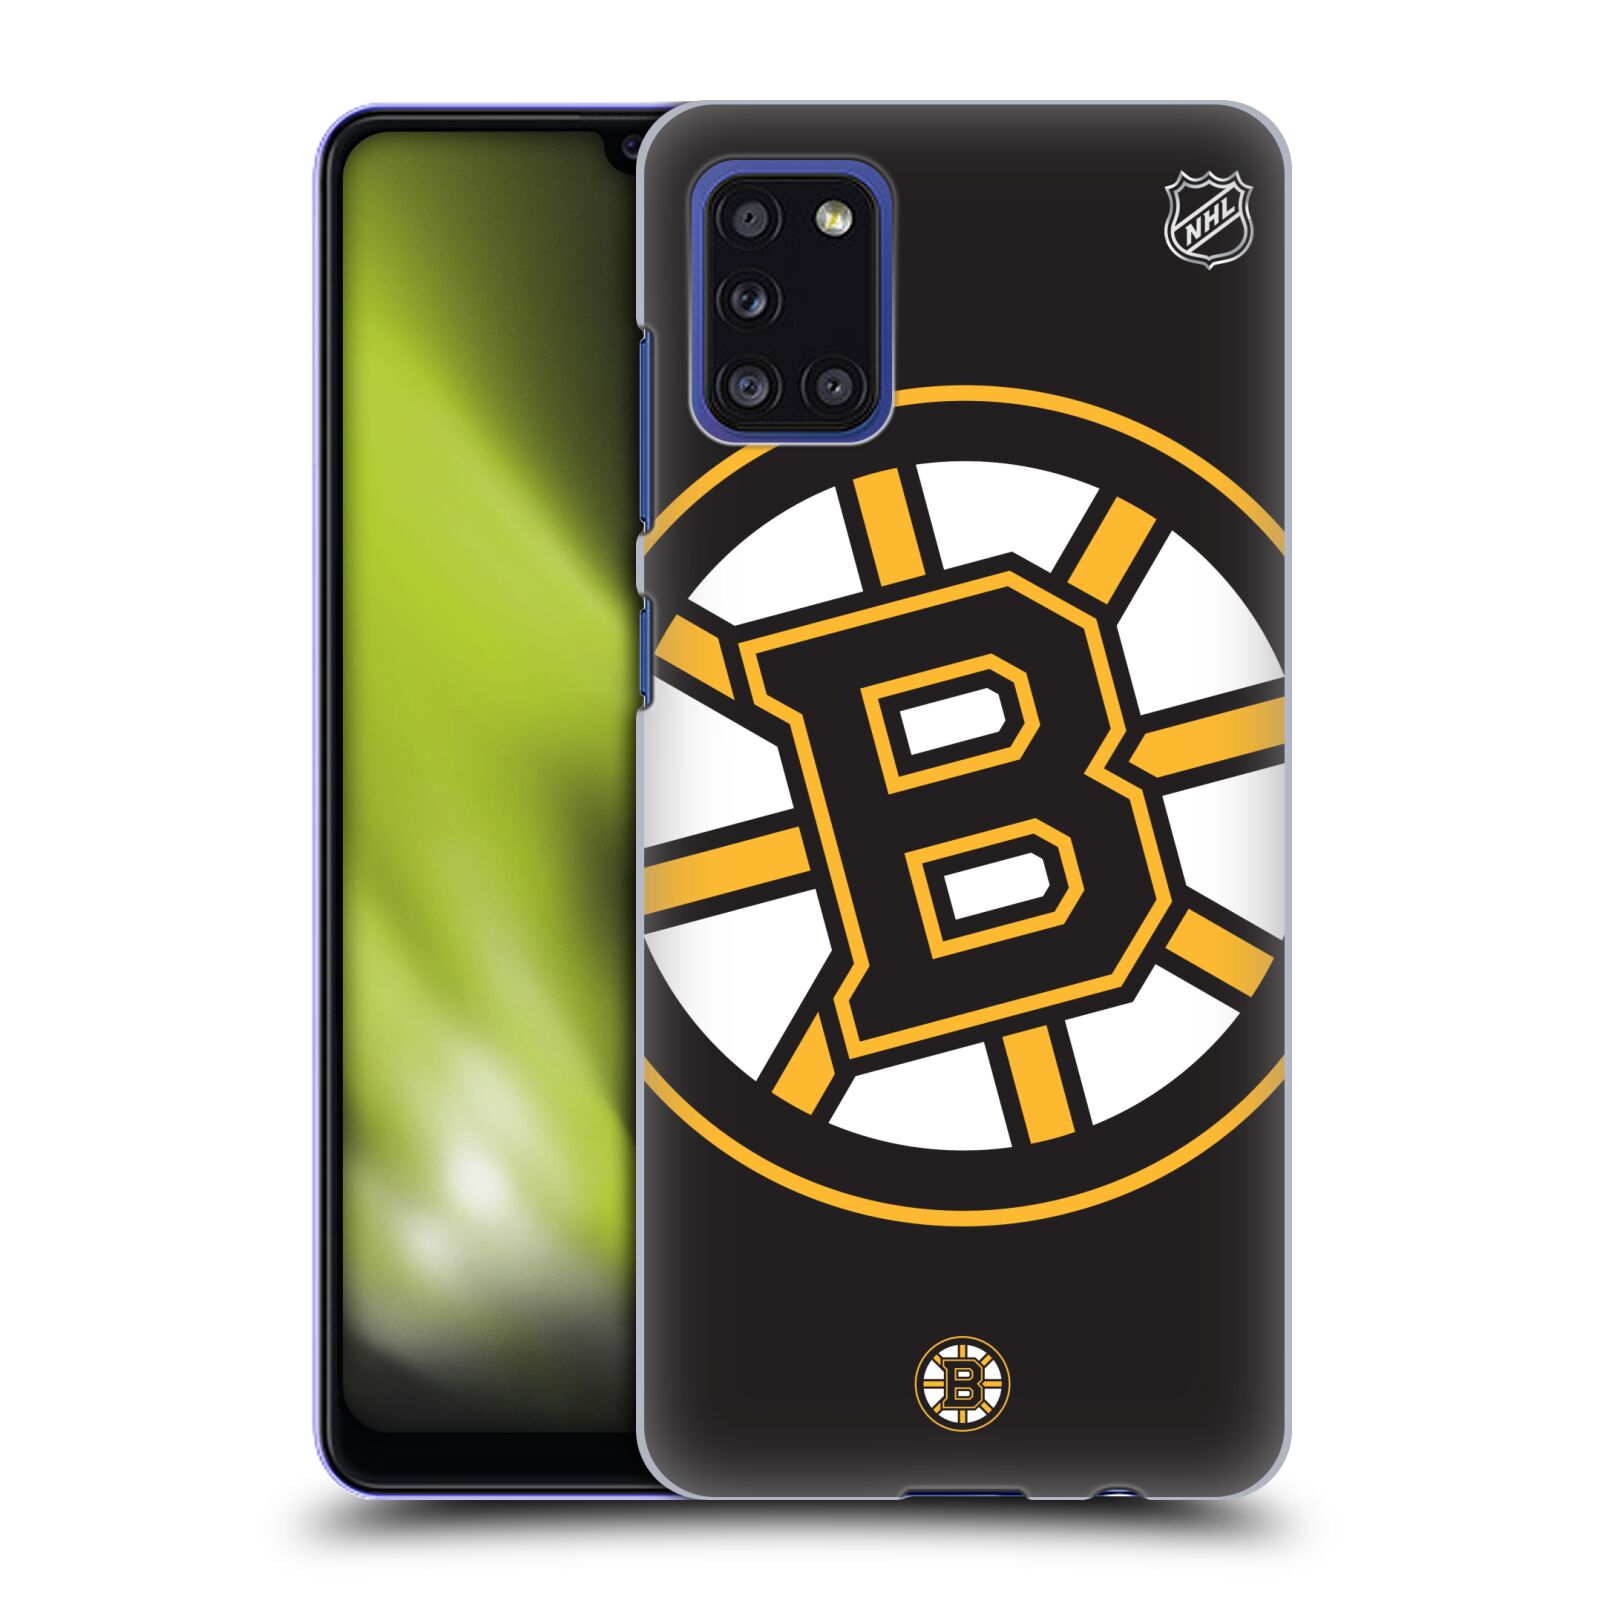 Pouzdro na mobil Samsung Galaxy A31 - HEAD CASE - Hokej NHL - Boston Bruins - velký znak